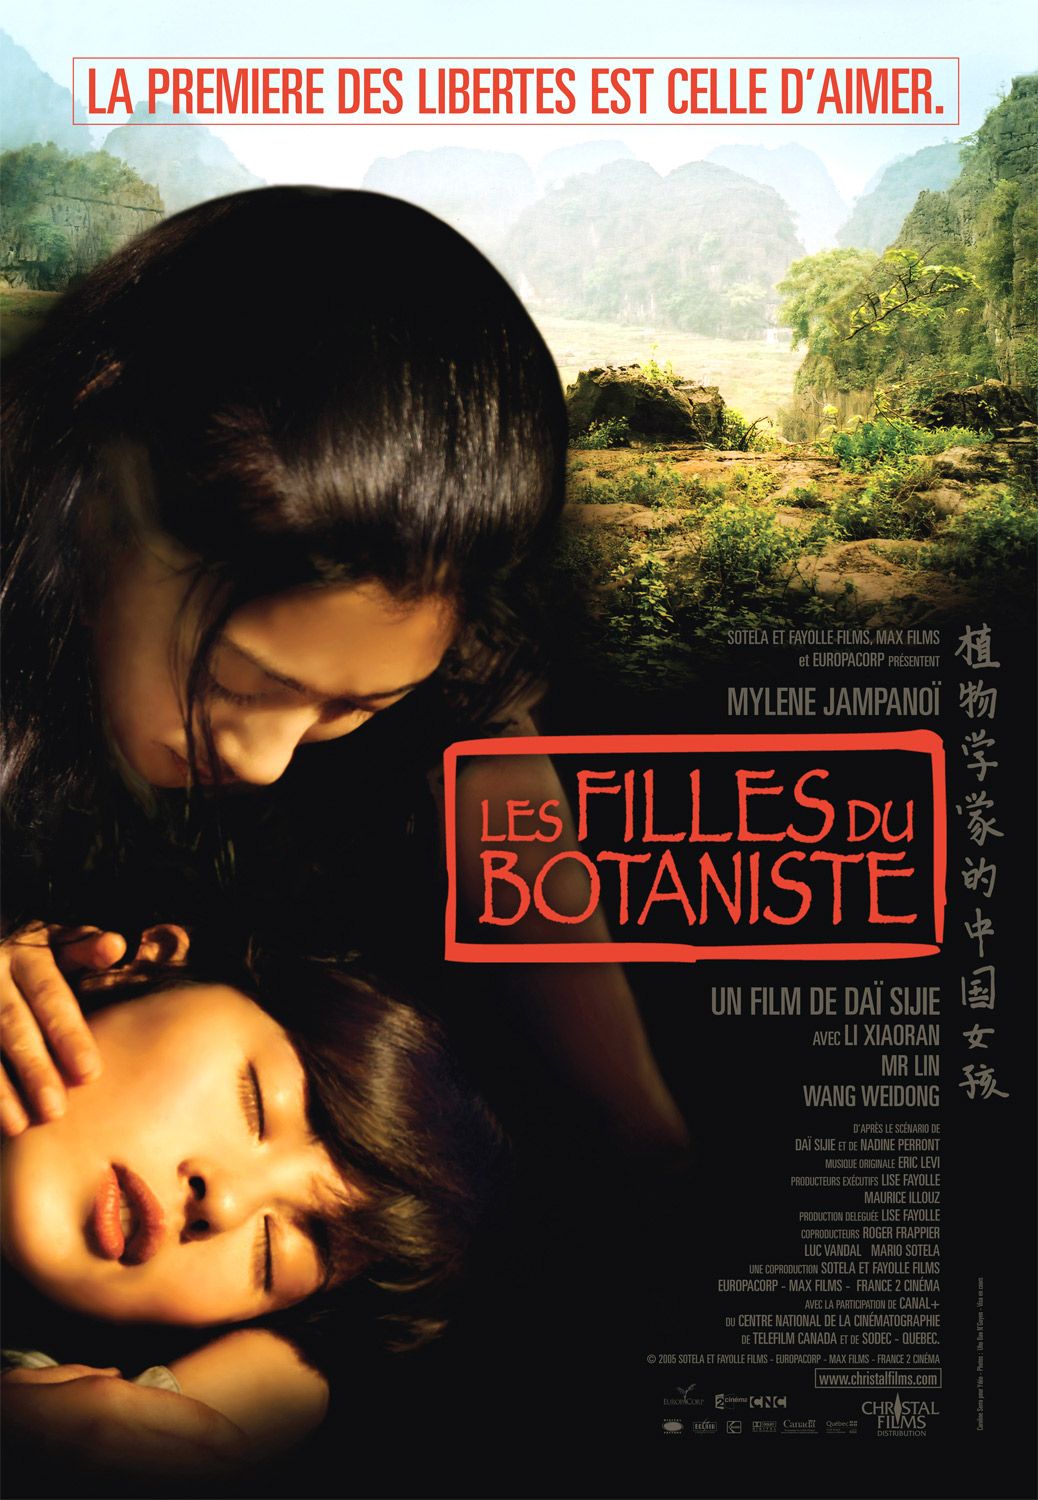 Extra Large Movie Poster Image for Filles du botaniste, Les (#2 of 2)